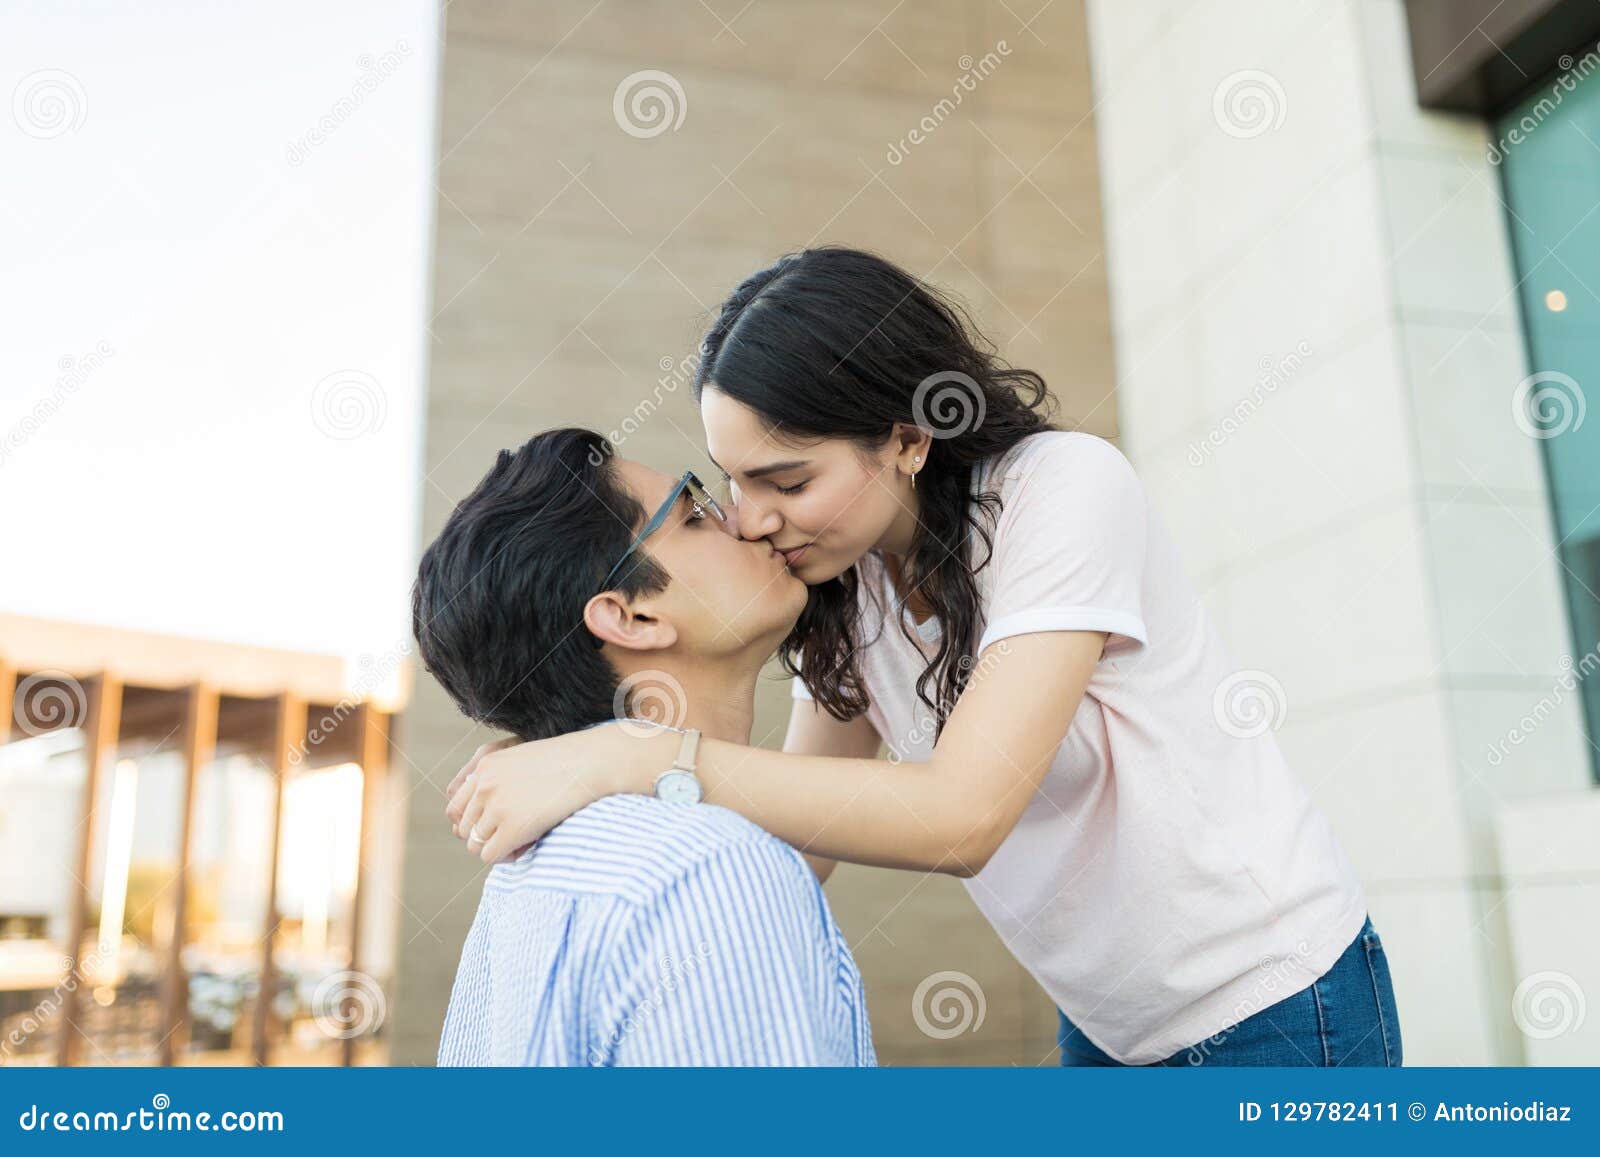 男人亲吻手握头的女人 库存图片. 图片 包括有 女性, 藏品, 幸福, 浪漫, 礼服, 白种人, 关闭 - 253505727